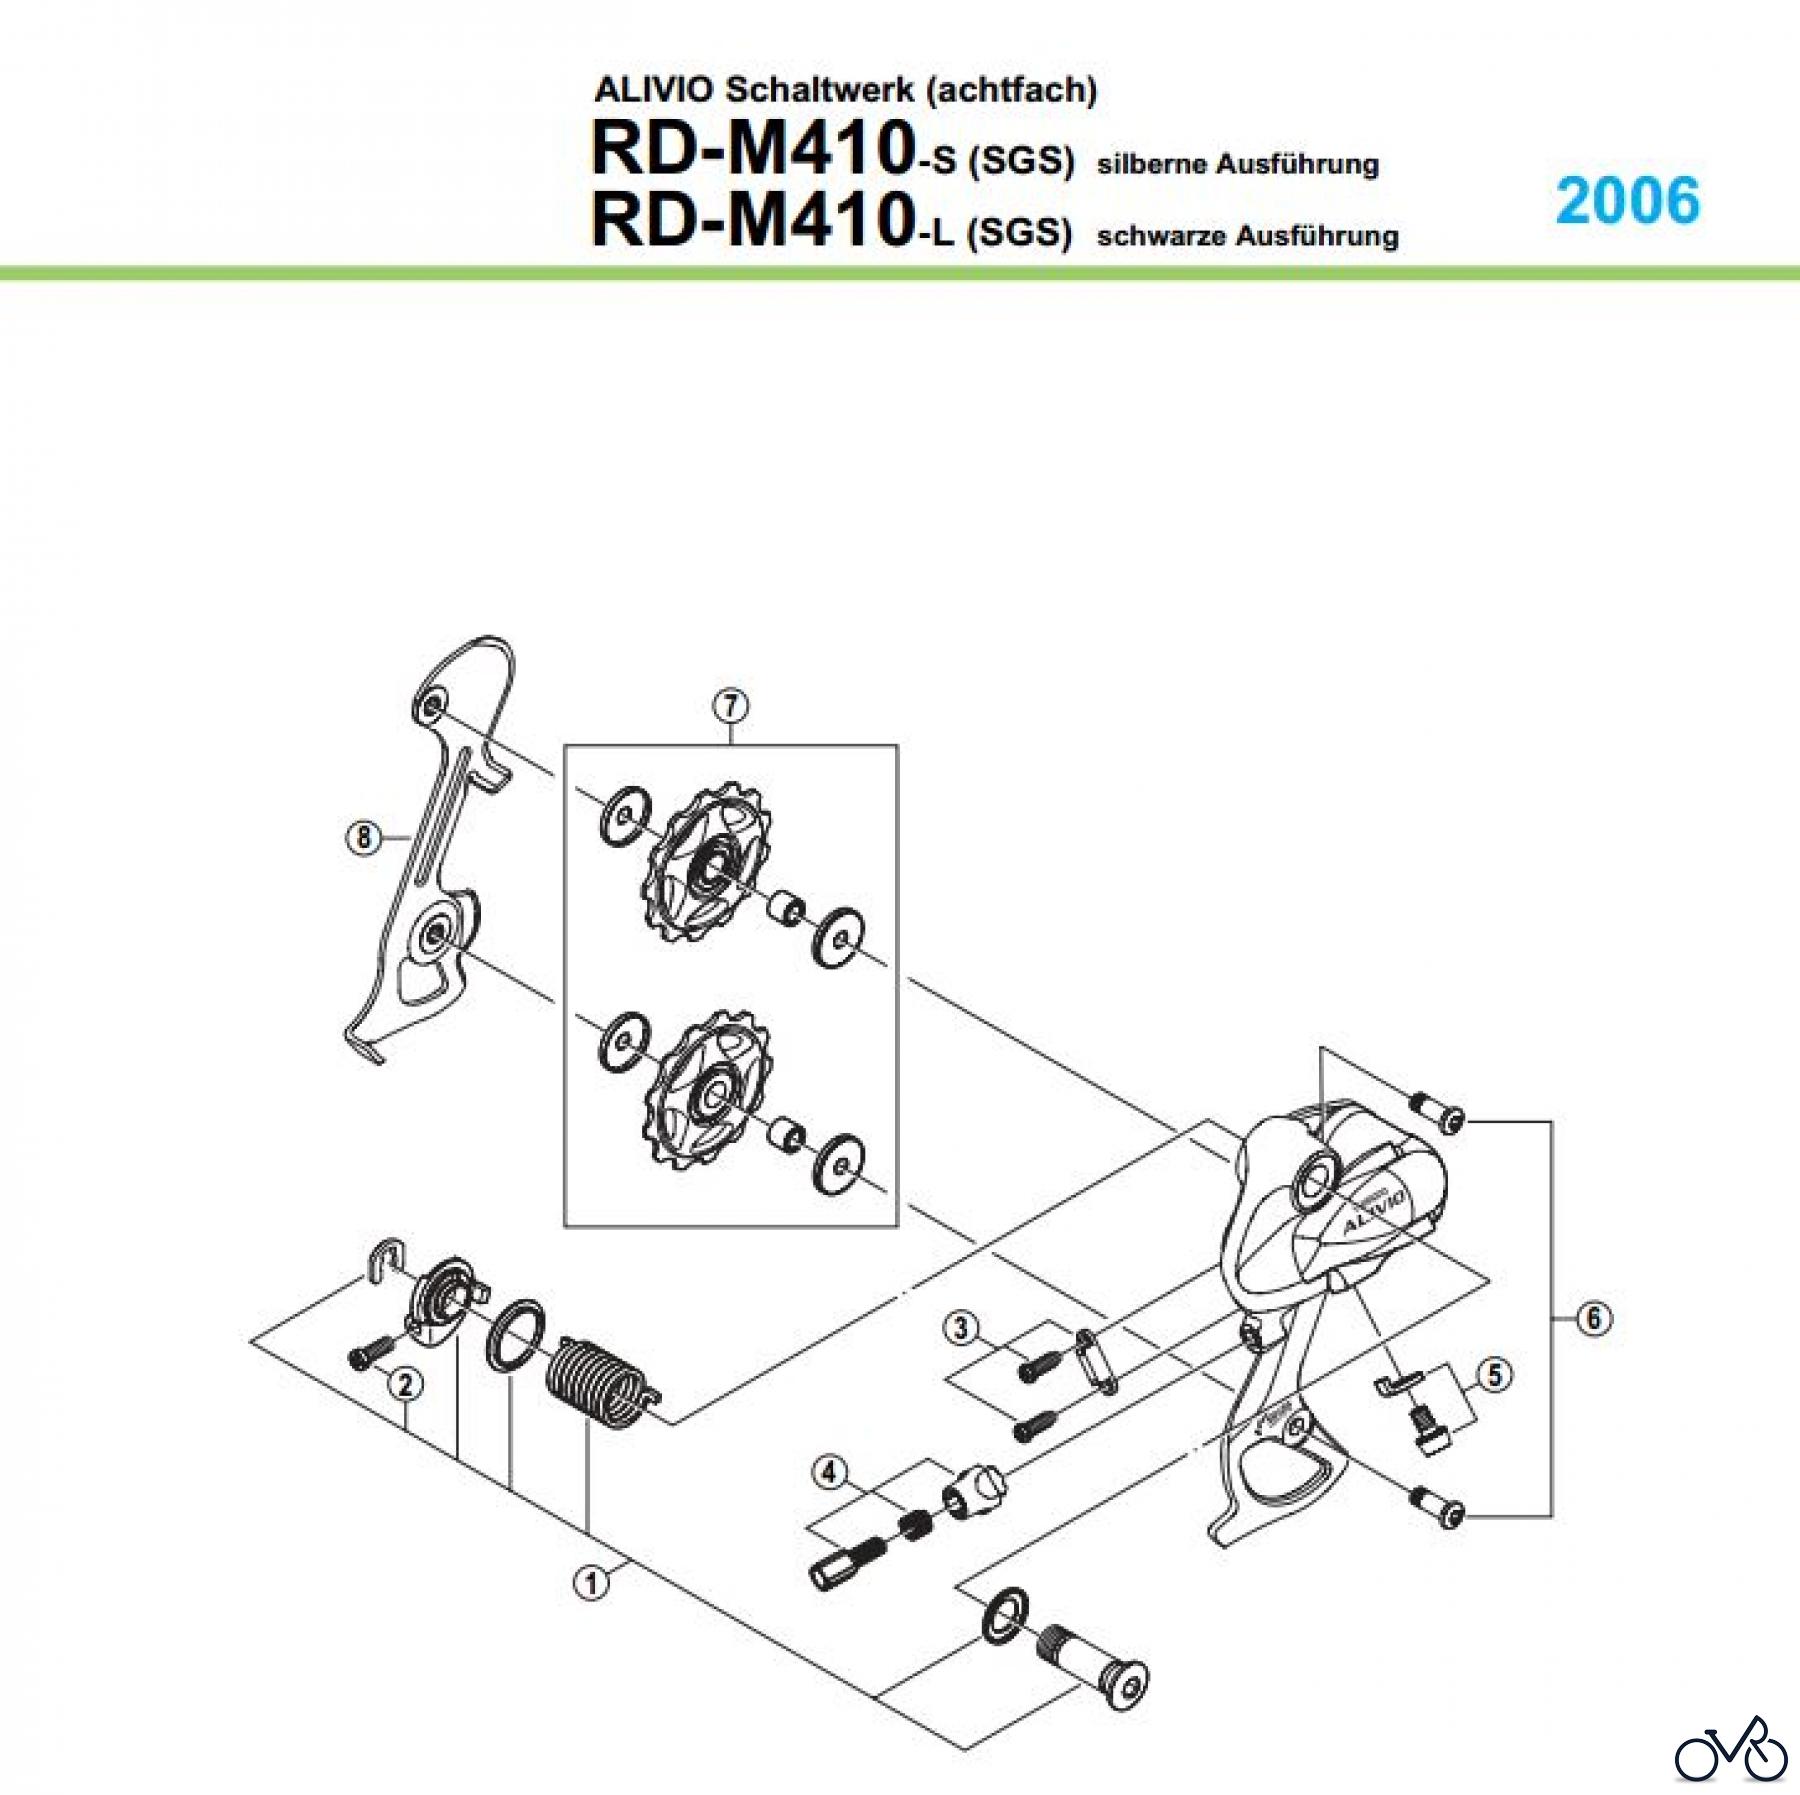  Shimano RD Rear Derailleur - Schaltwerk RD-M410-05